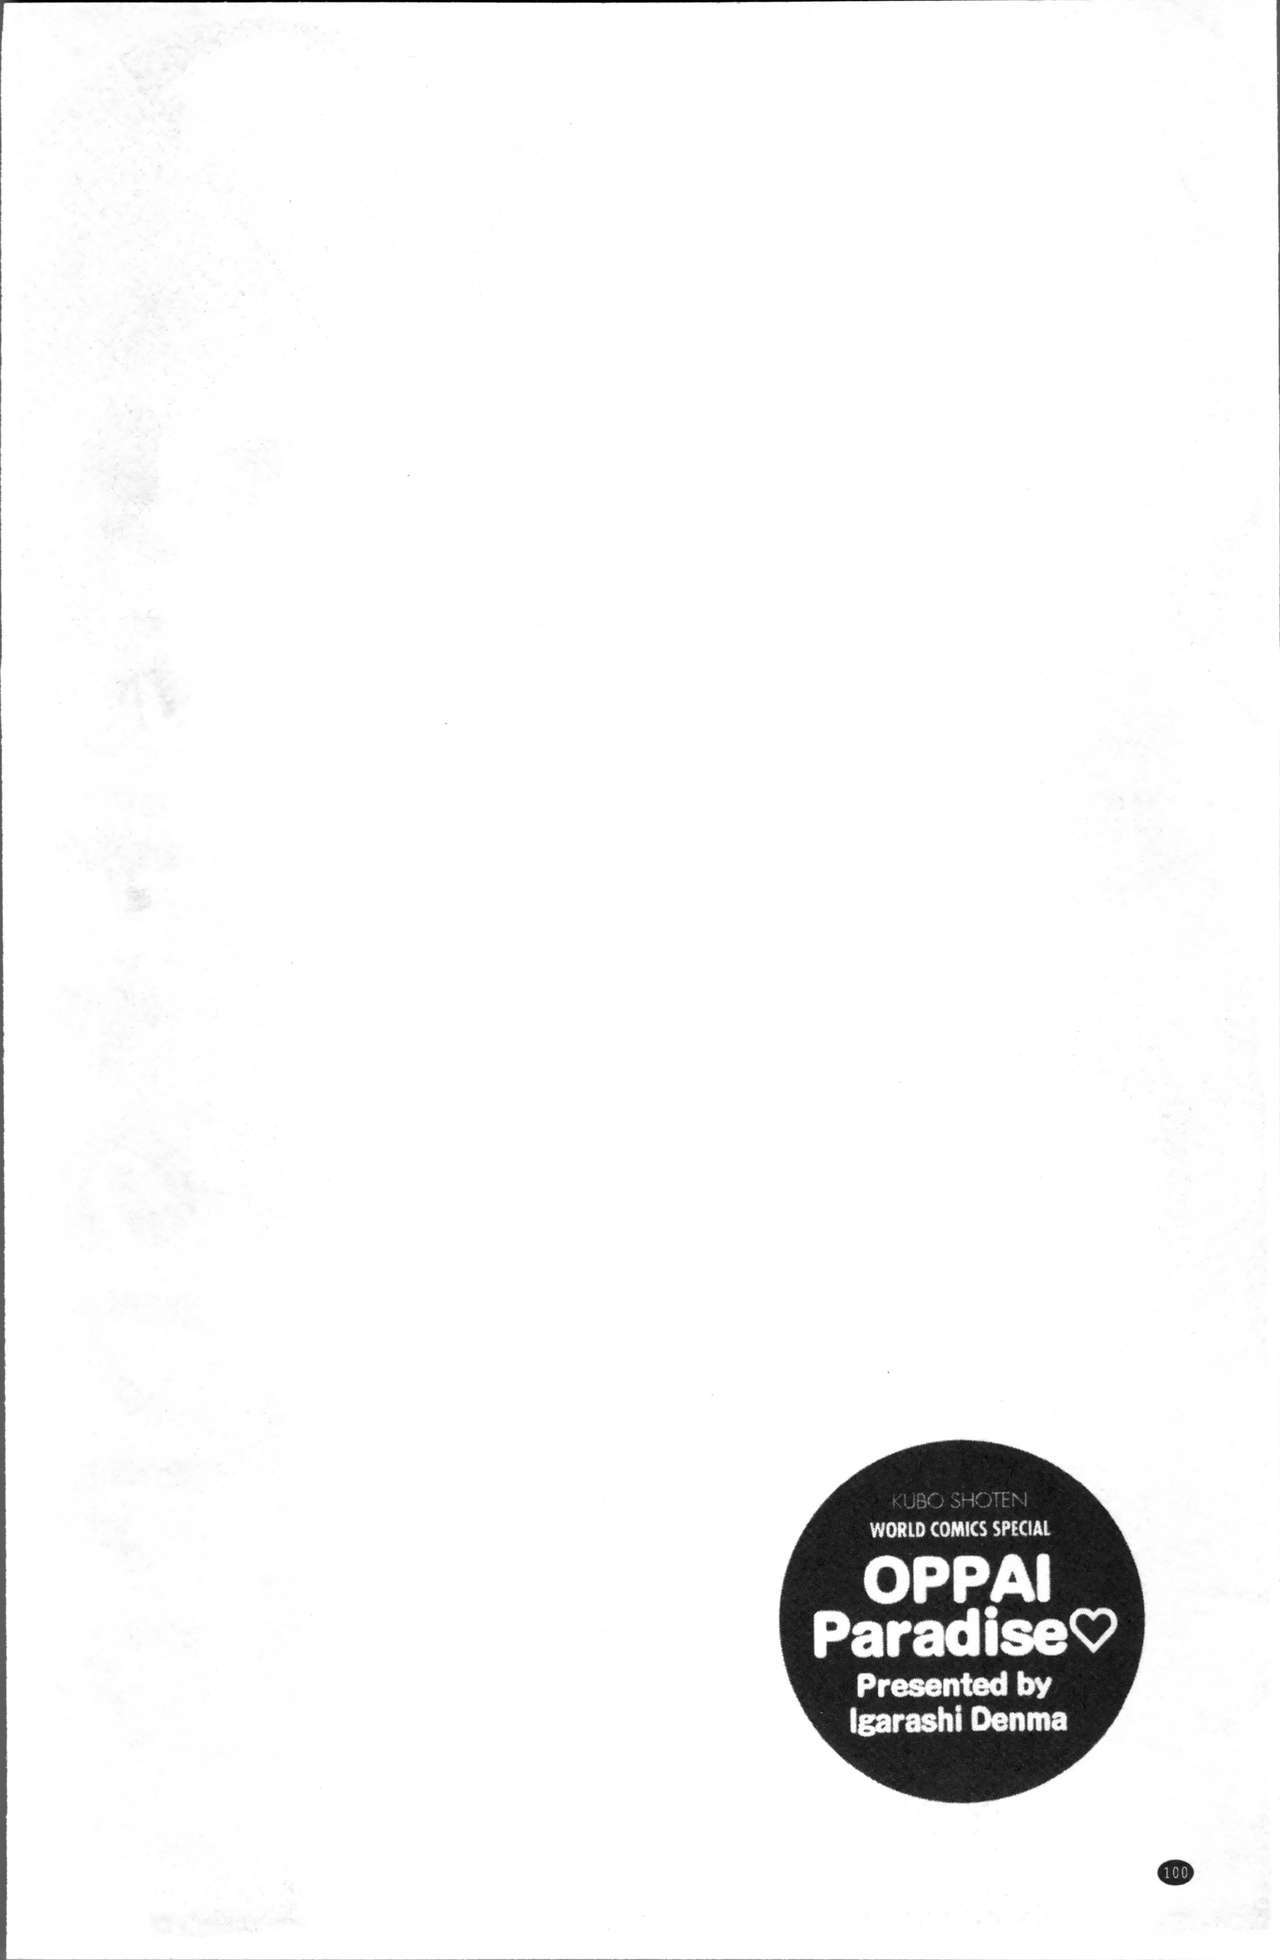 Oppara-OPPAIパラダイス